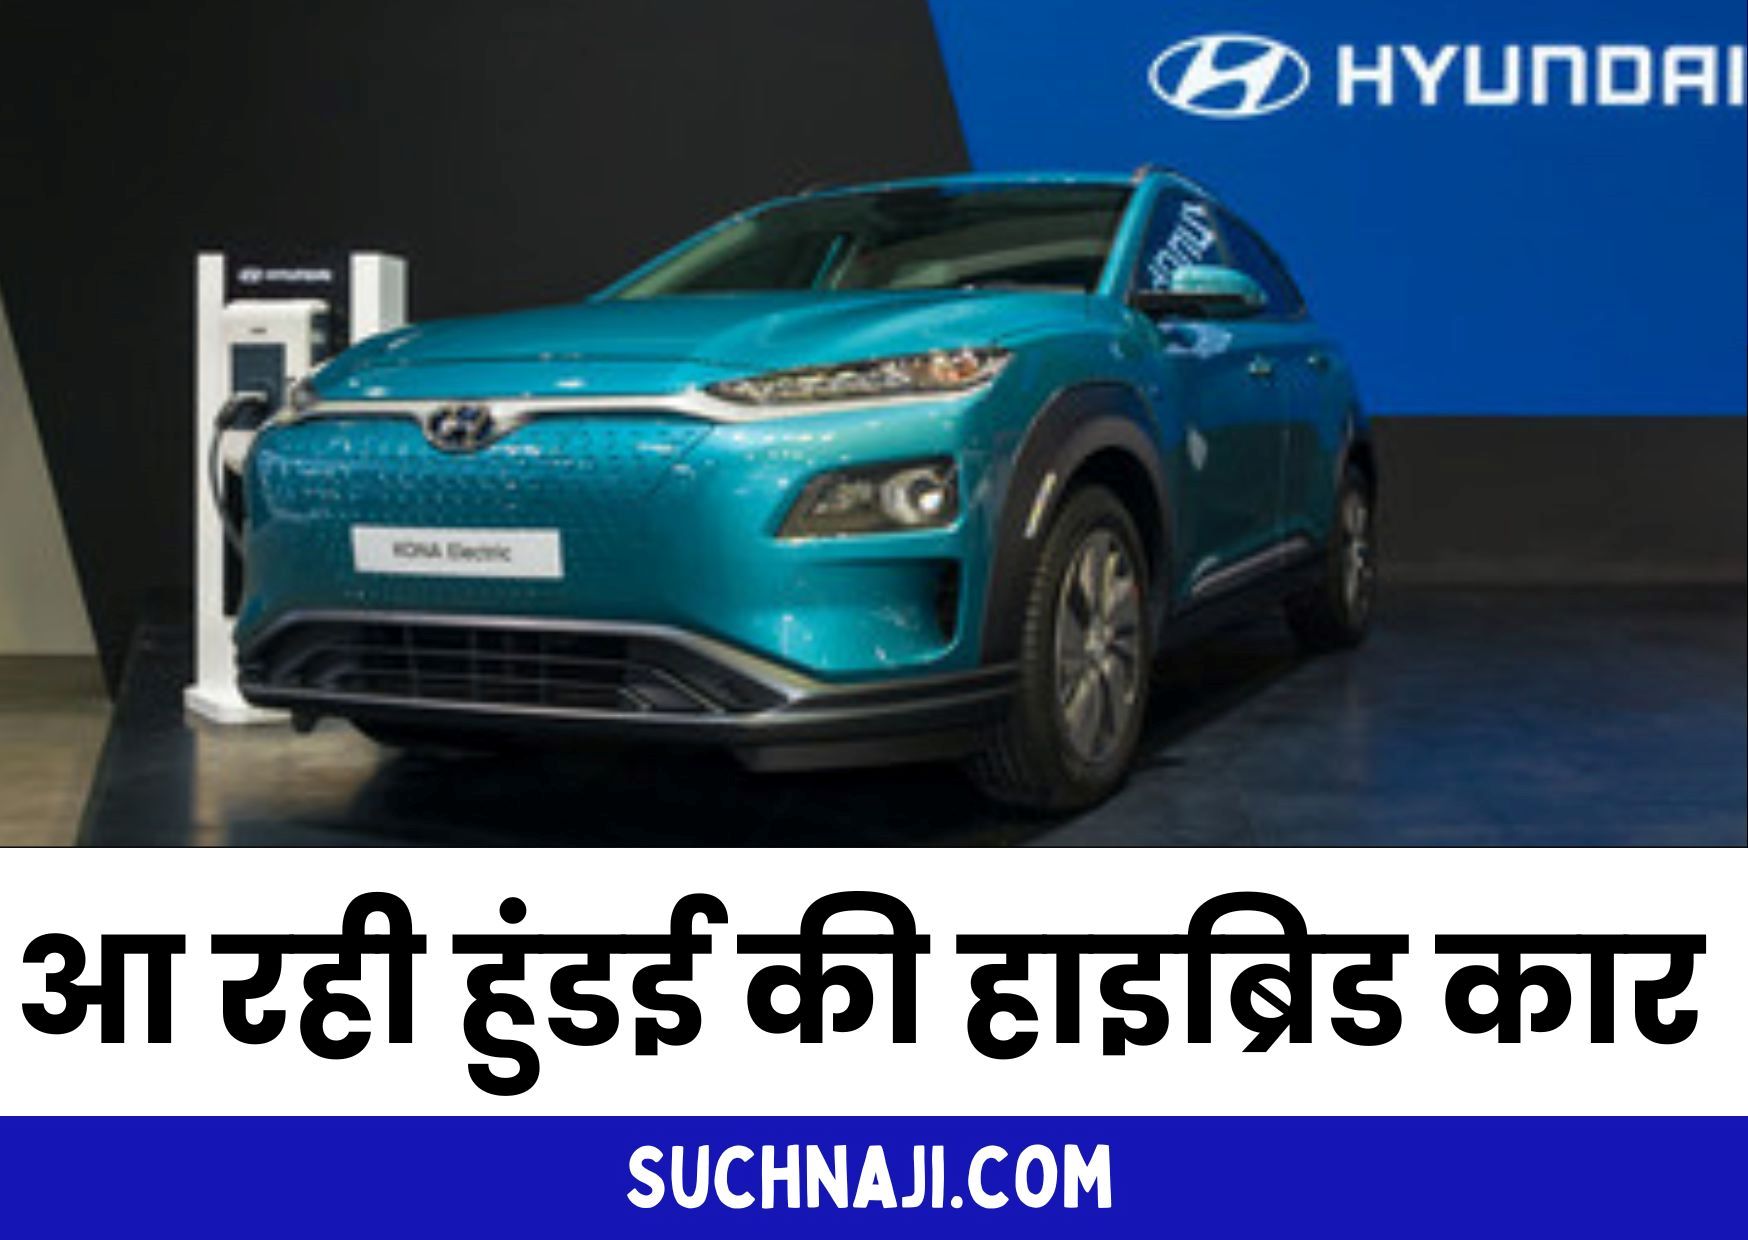 Automobile News: इंडिया में हाइब्रिड कार की लॉन्चिंग की तैयारी में हुंडई, जानिए कंपनी की लंबी-चौड़ी प्लानिंग